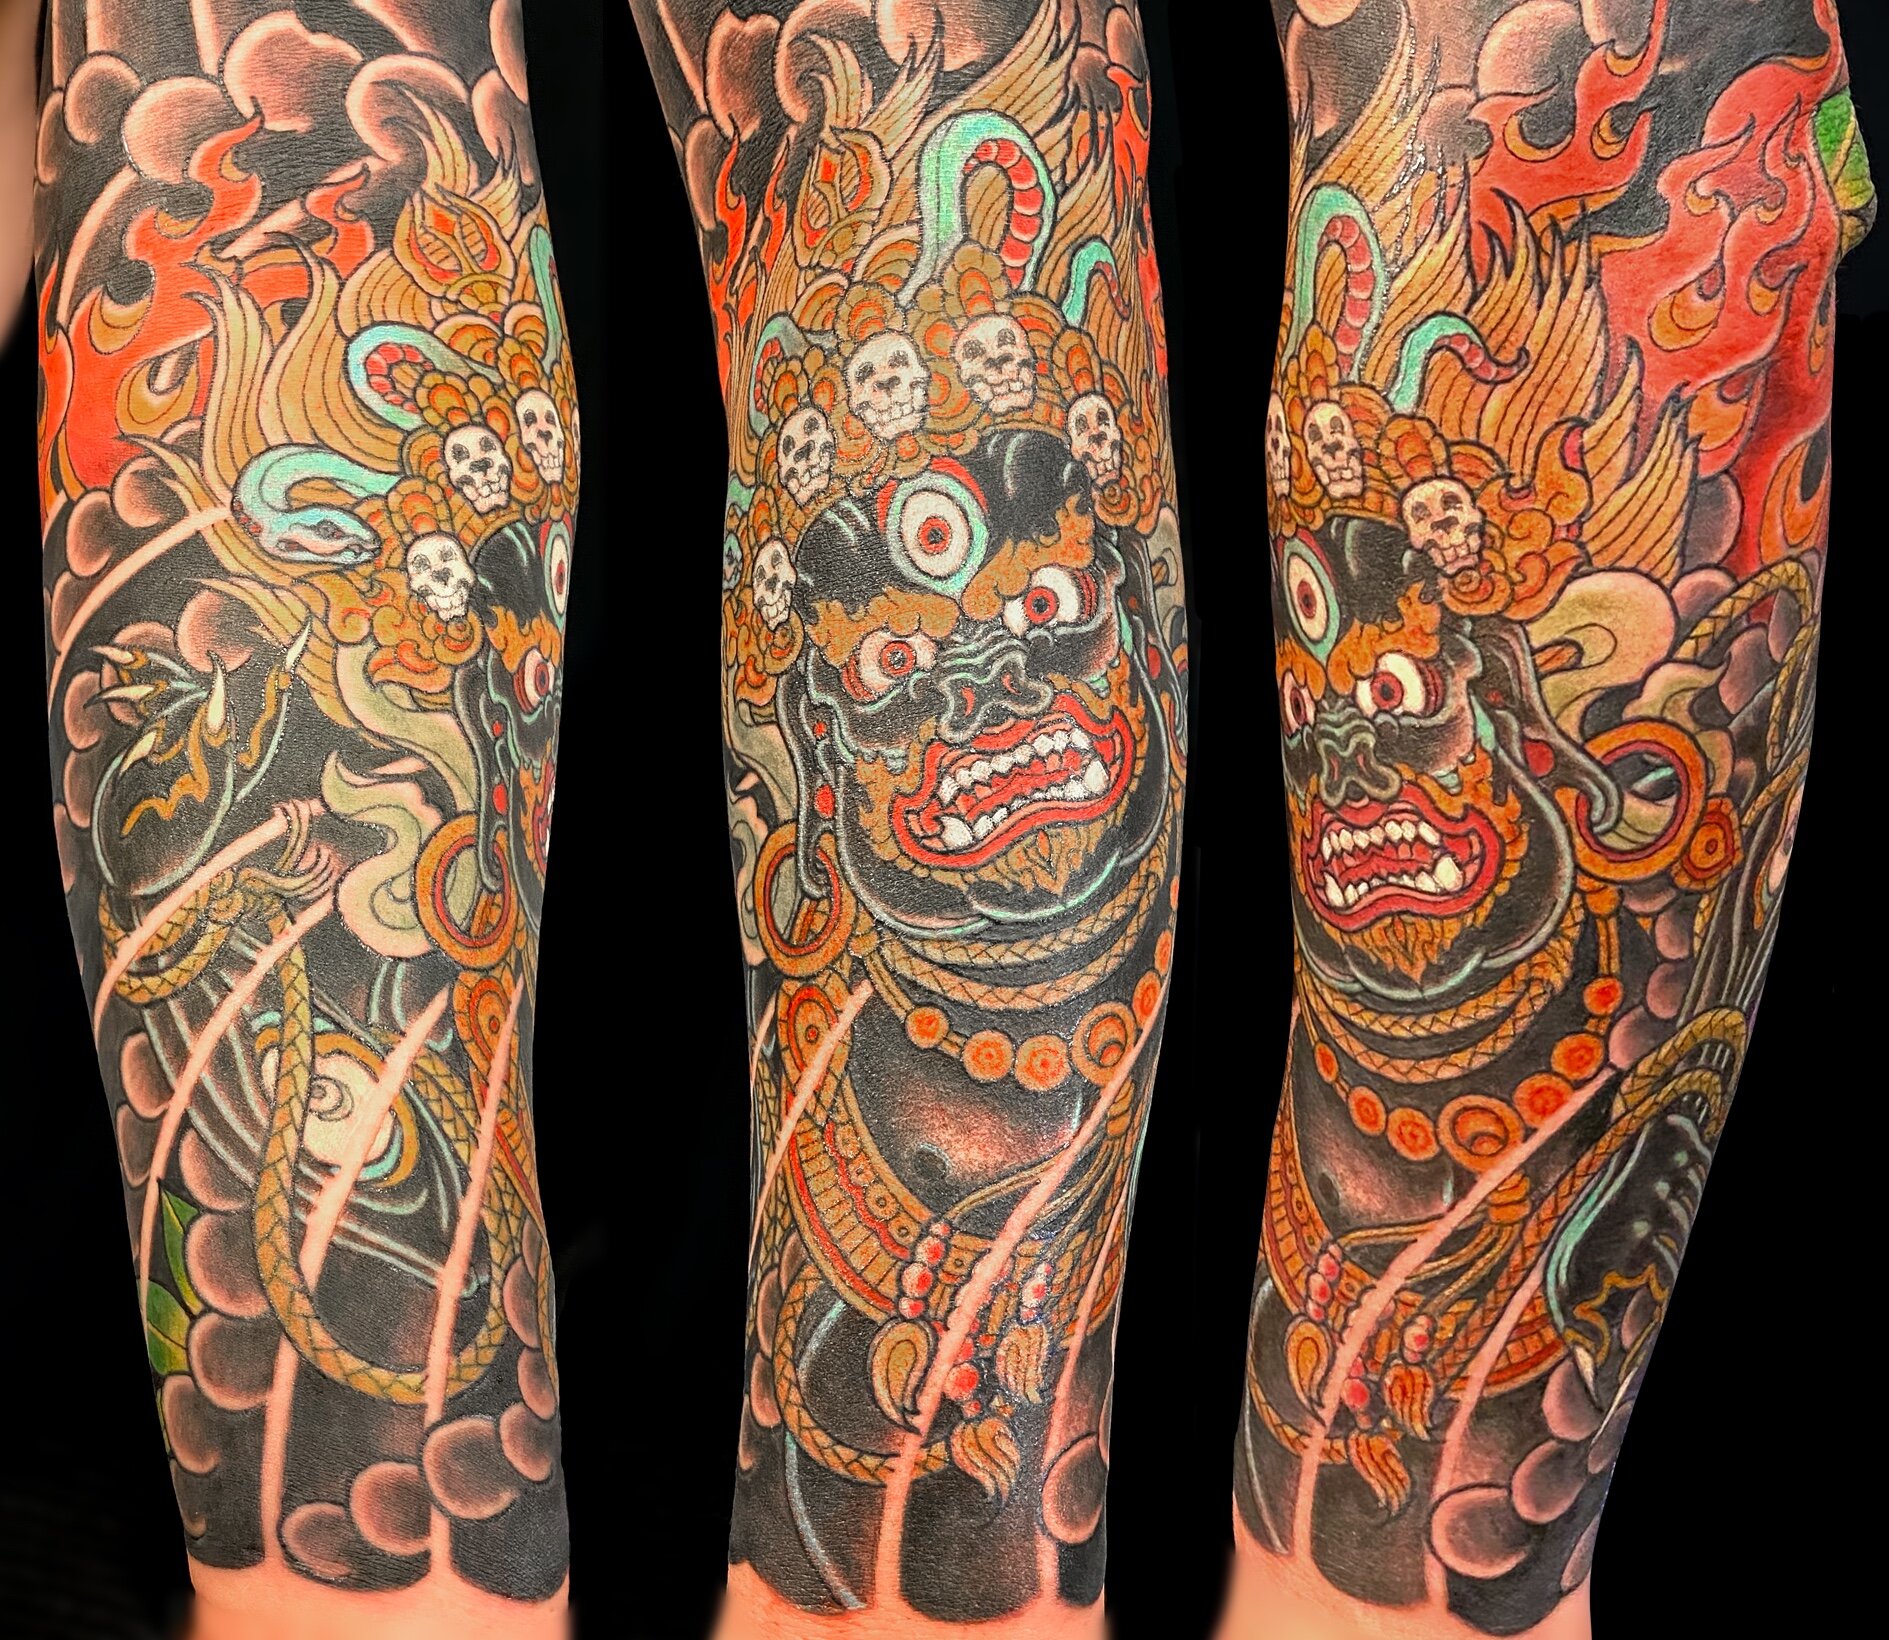 Victoria, BC Tattoo Artist - Cohen Floch - Tattoo Shop - Vancouver Island,  BC — Tattoo Artist - Victoria, BC - Cohen Floch